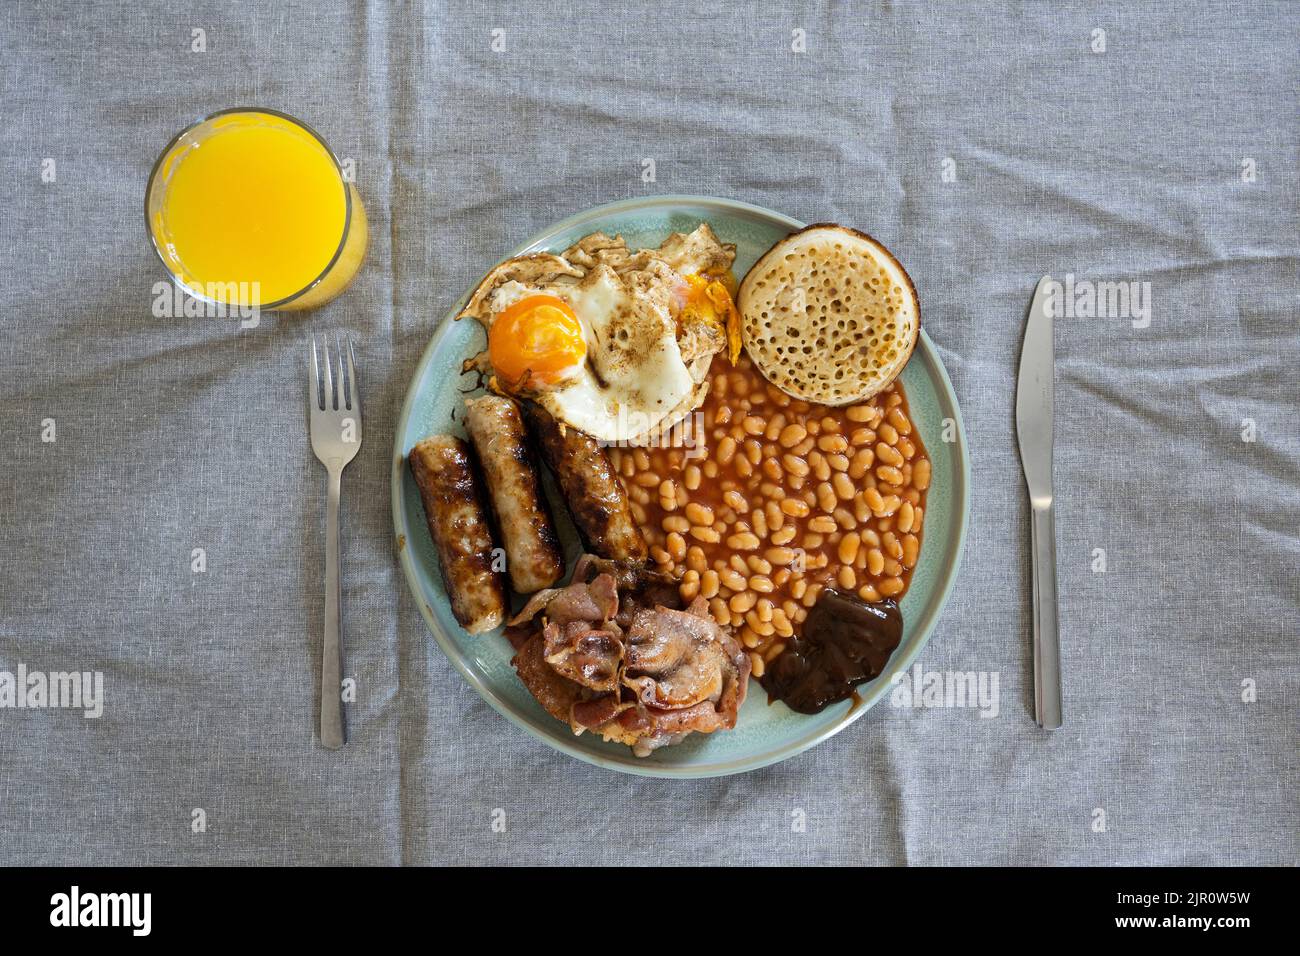 Desayuno inglés tradicional en una mesa con zumo de naranja, cubiertos, huevos, tocino, salchichas, frijoles horneados y una migleta. REINO UNIDO. Concepto - alimentación no saludable Foto de stock